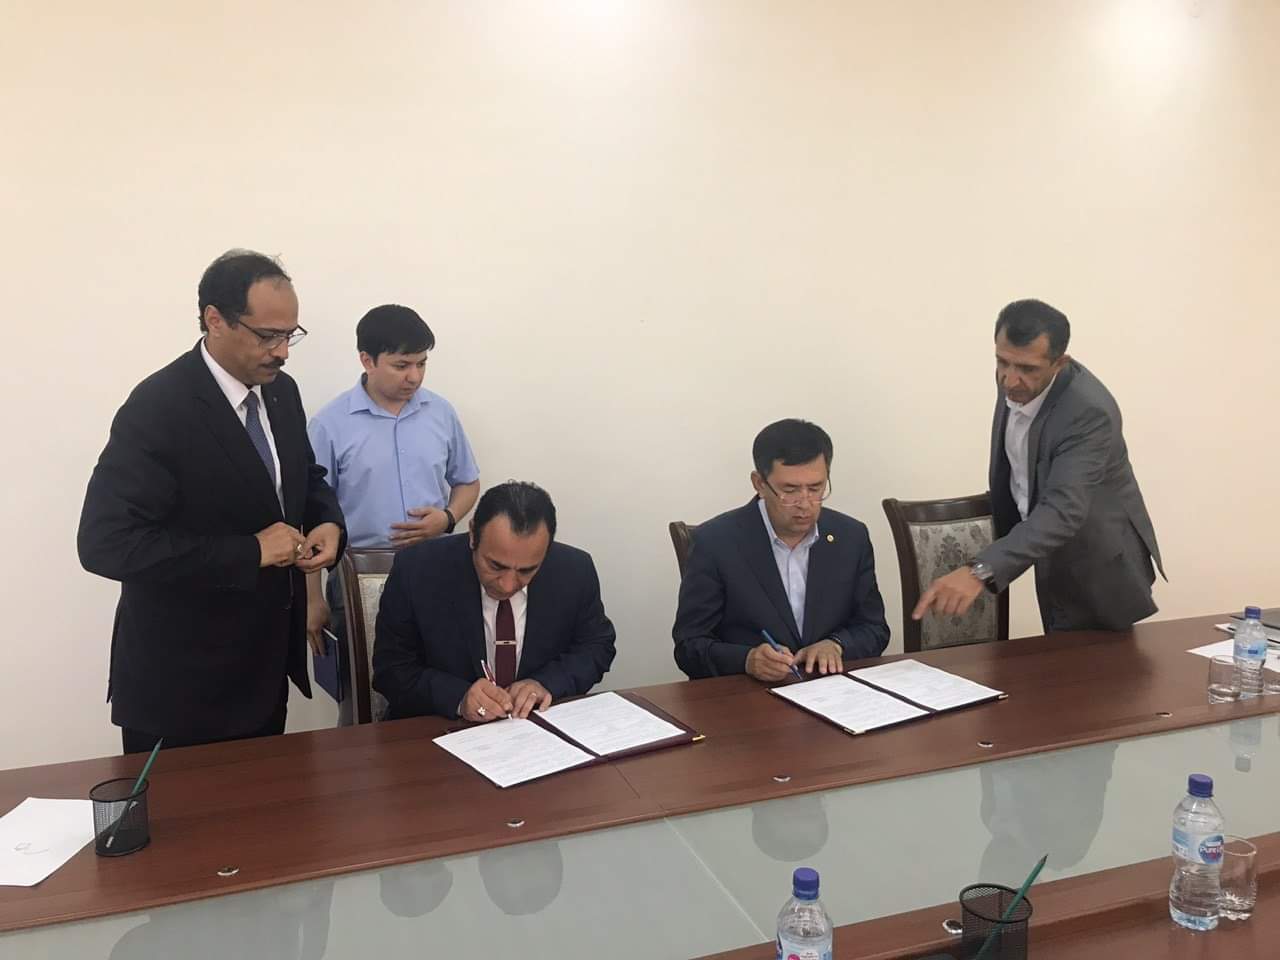 بالصور..توقيع اتفاق مصري اوزباكستاني لتطوير مزار الامام البخاري